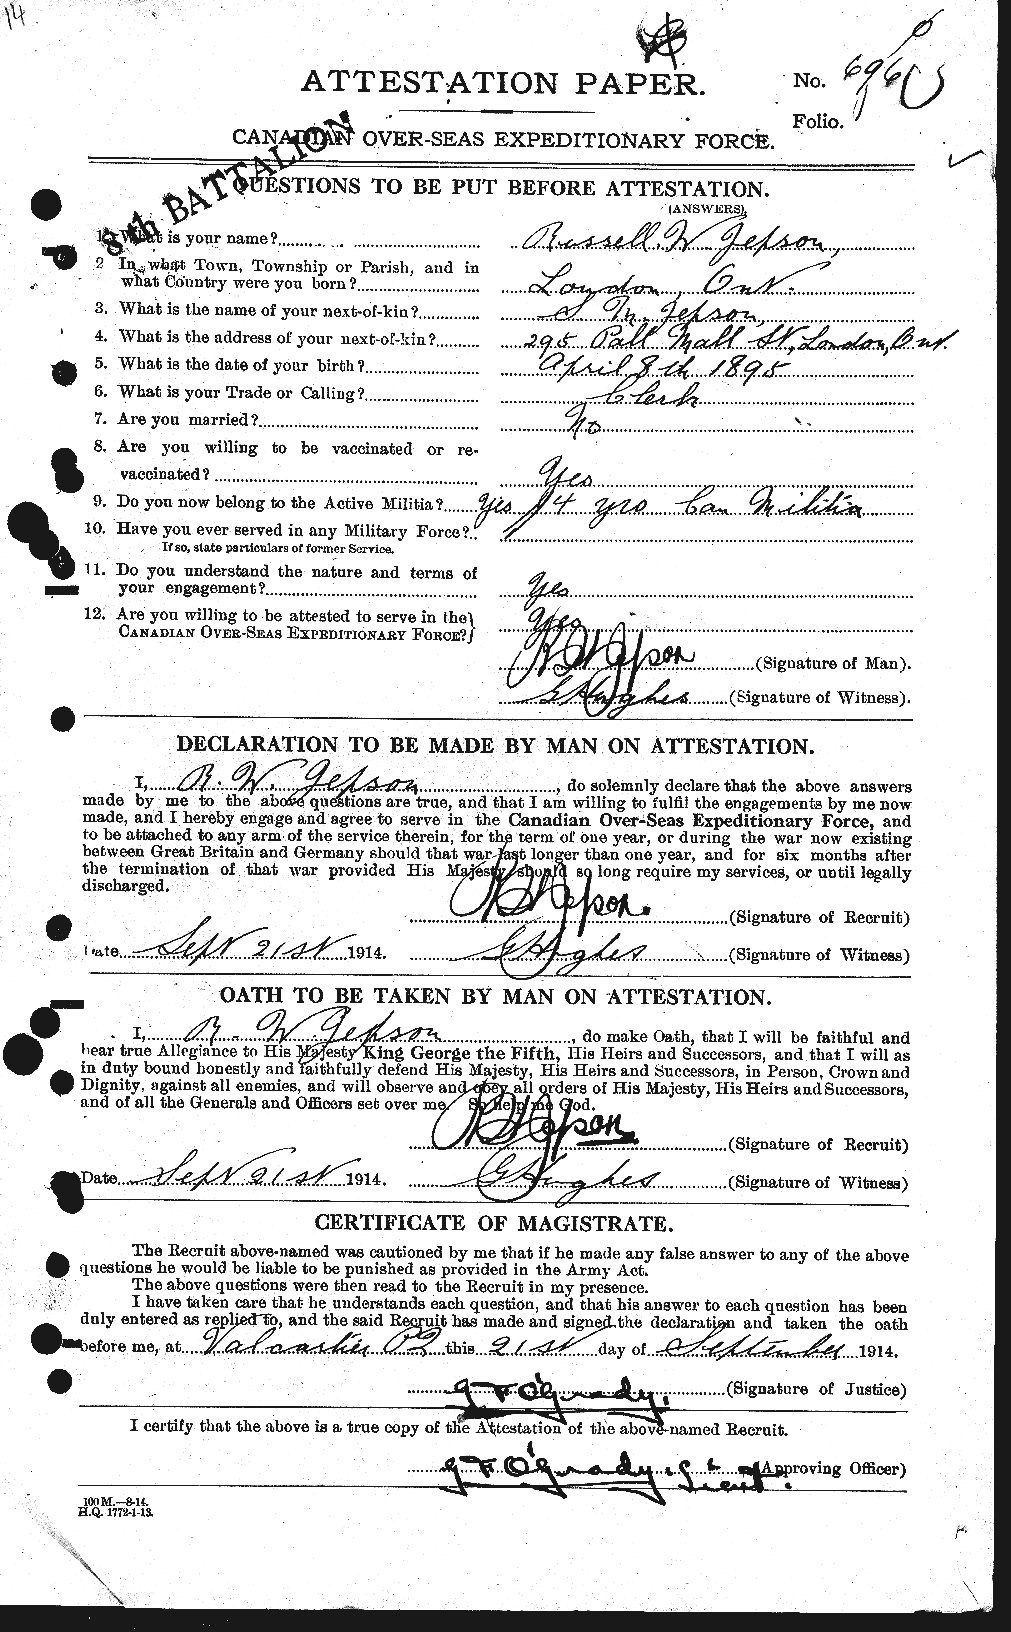 Dossiers du Personnel de la Première Guerre mondiale - CEC 421709a